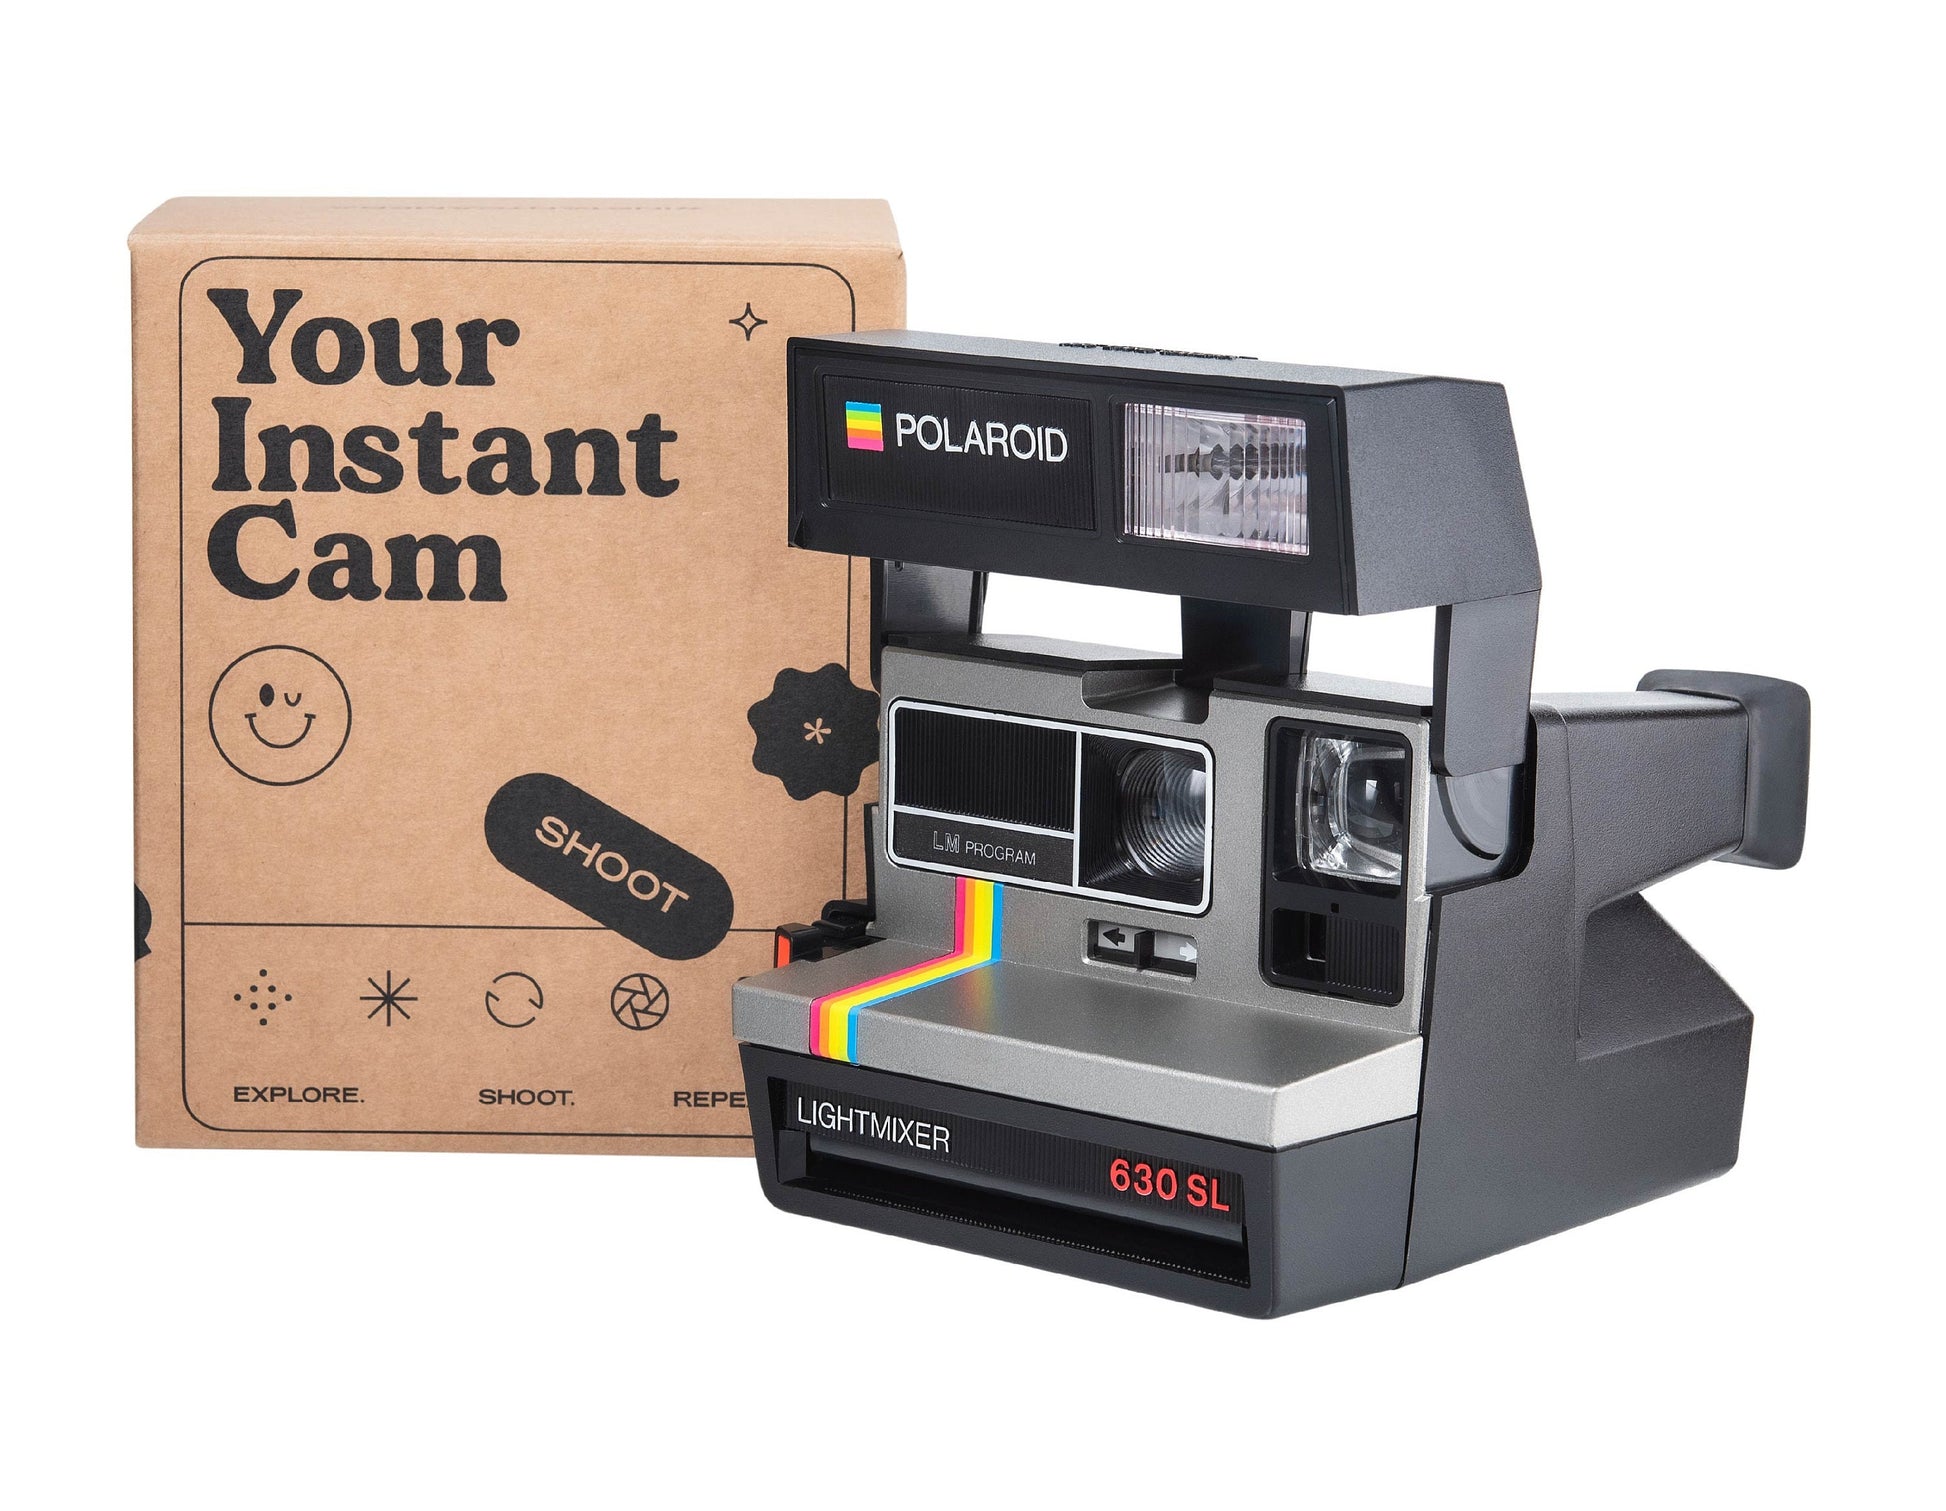 Polaroid 600, Polaroid 630 SL Lightmixer, Polaroid Supercolor, Polaroid camera, Vintage Polaroid, Instant camera - Vintage Polaroid Instant Cameras